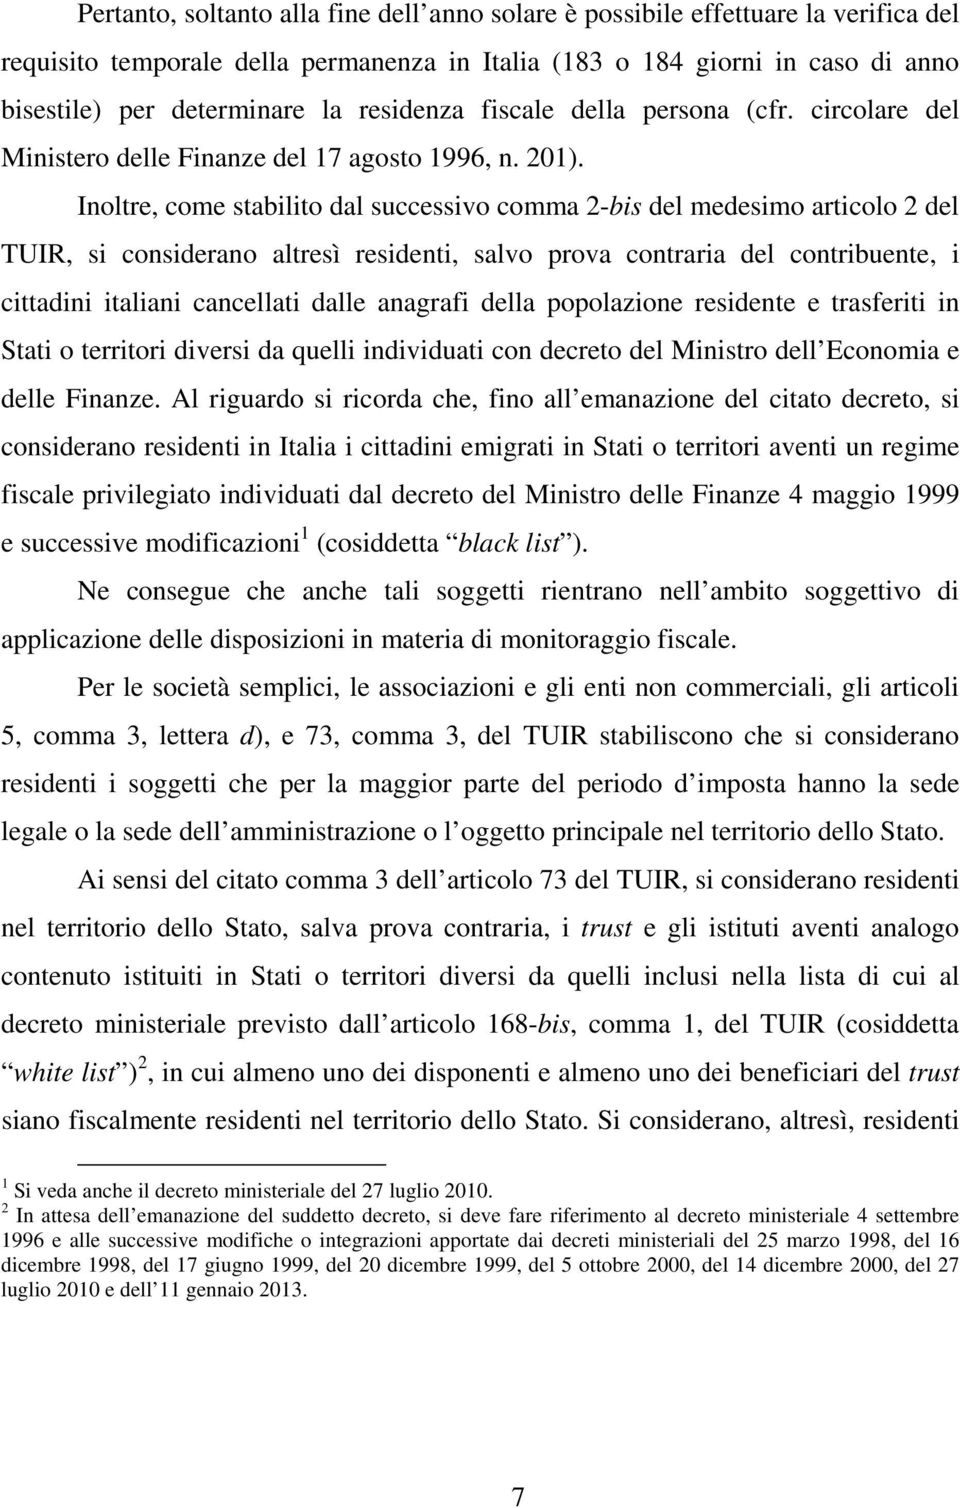 Inoltre, come stabilito dal successivo comma 2-bis del medesimo articolo 2 del TUIR, si considerano altresì residenti, salvo prova contraria del contribuente, i cittadini italiani cancellati dalle